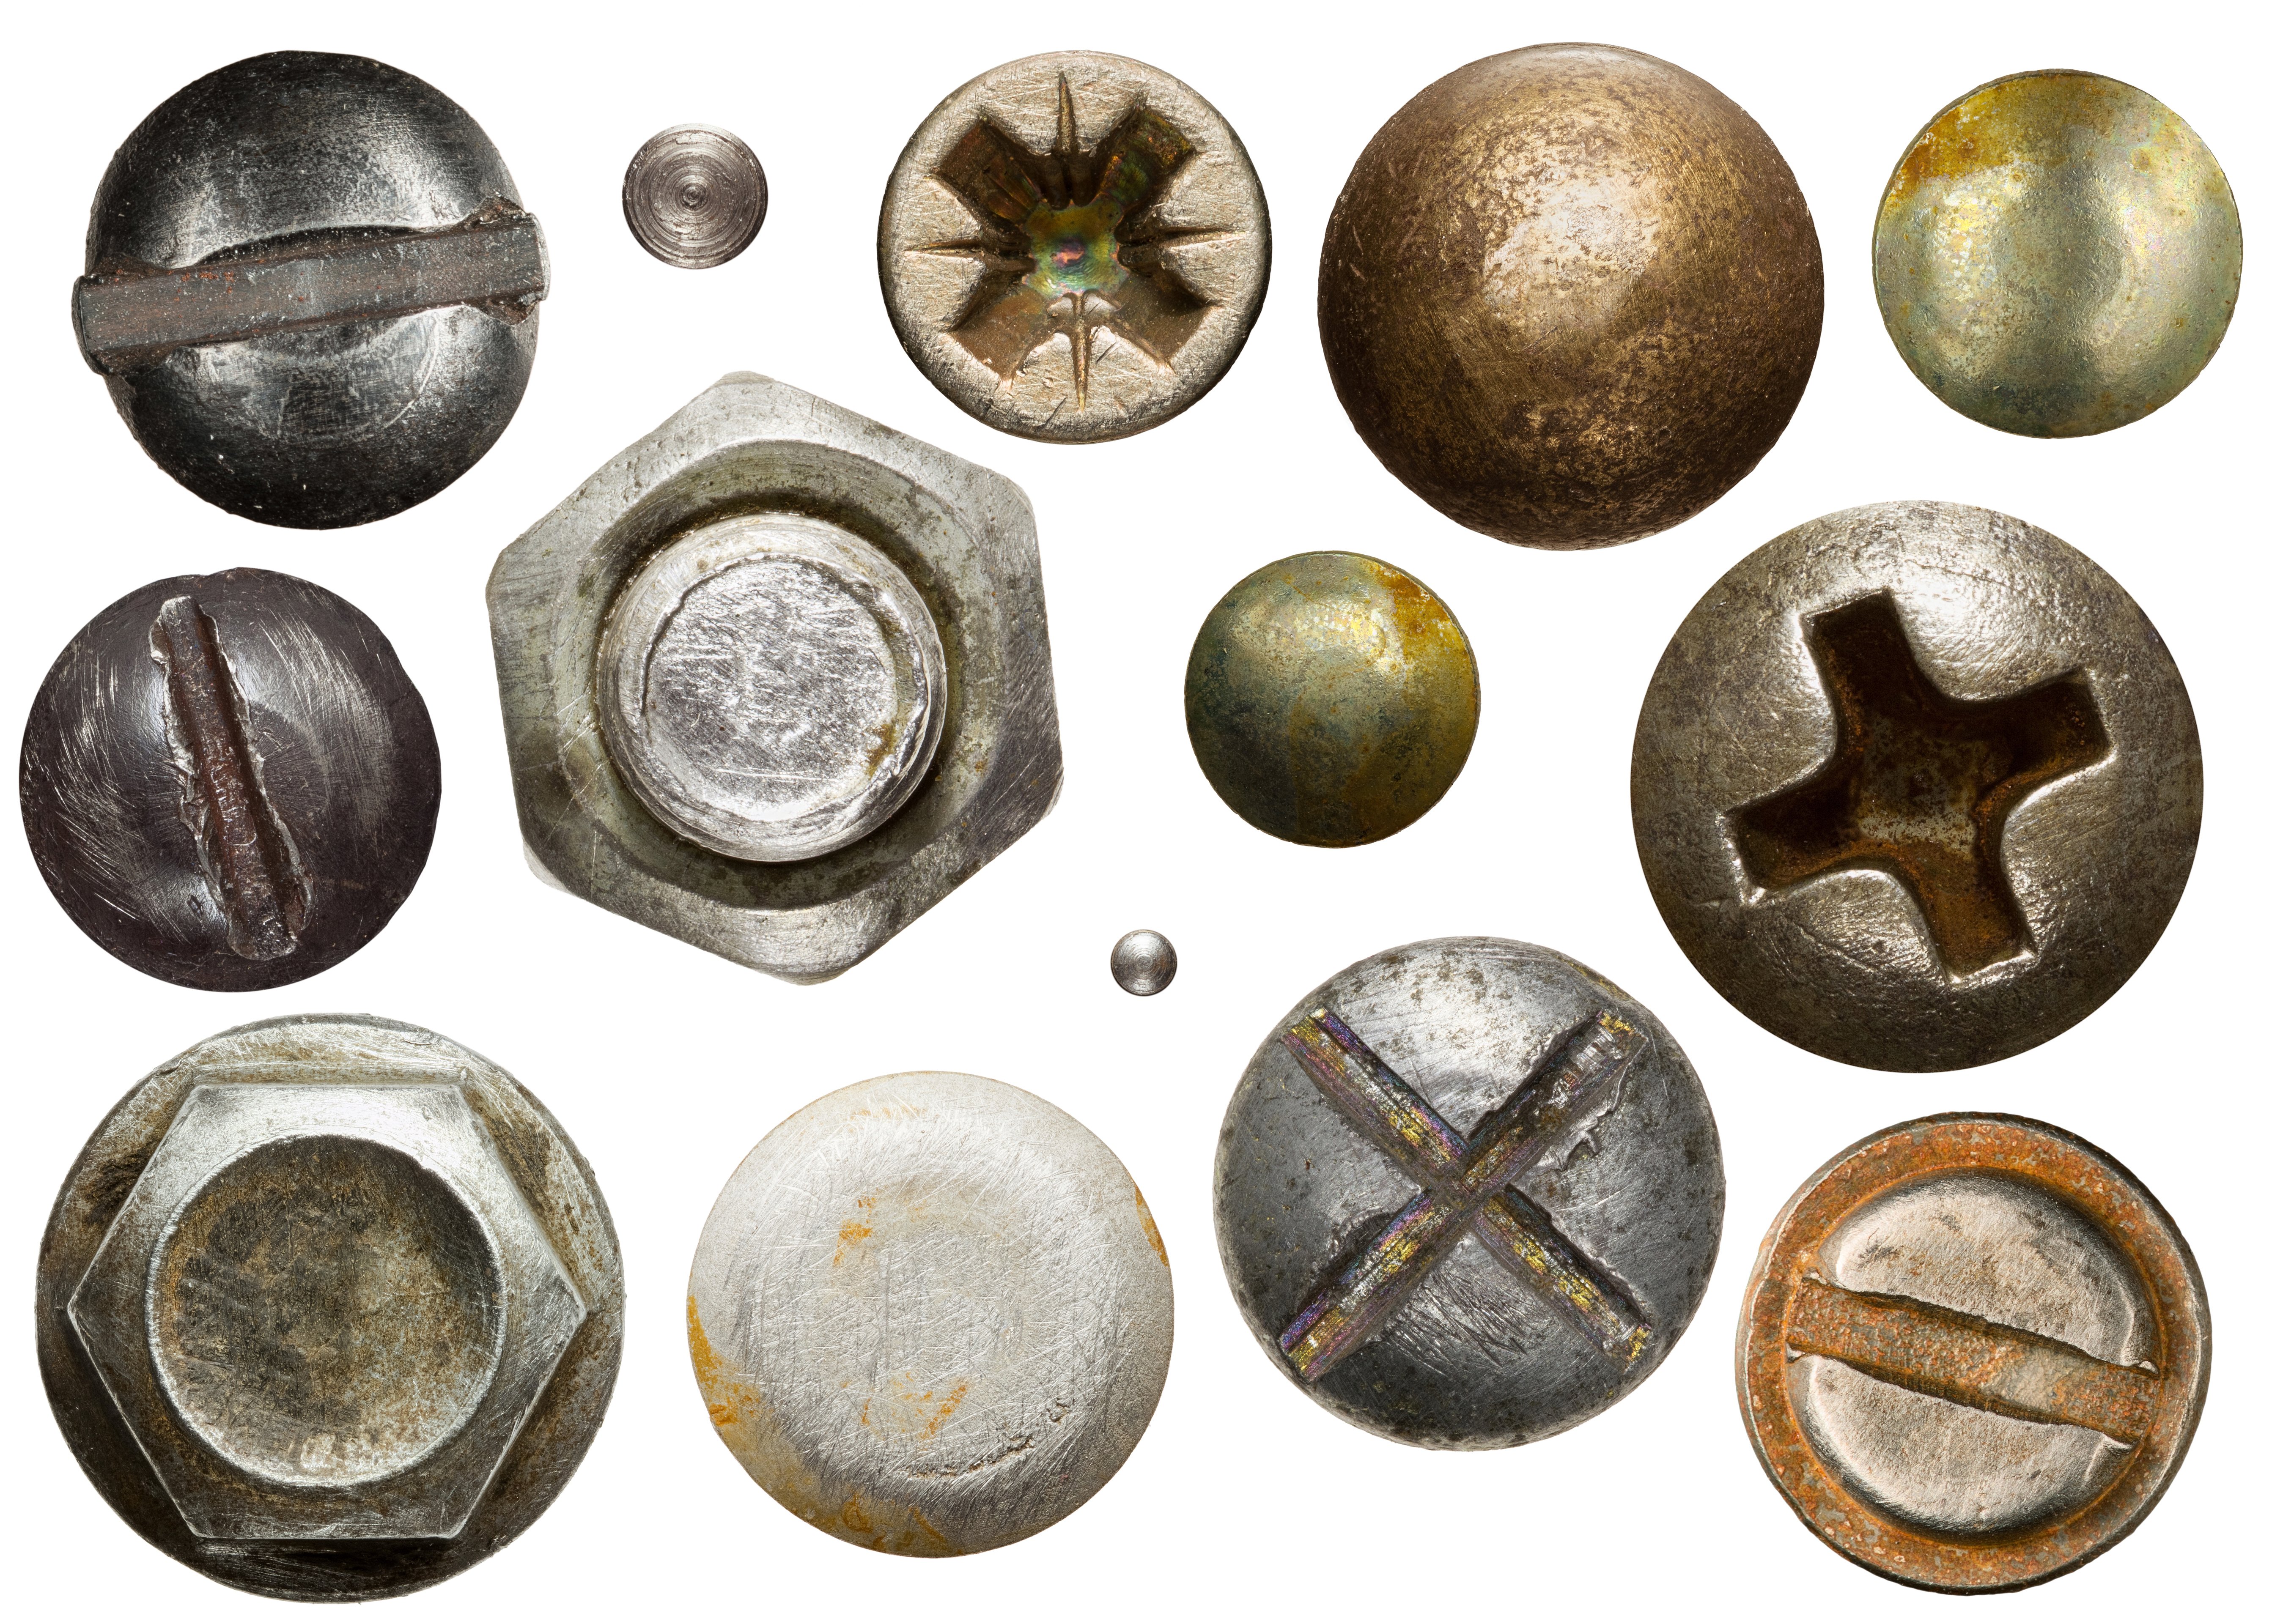 Tornillos oxidados. |Foto: Shutterstock